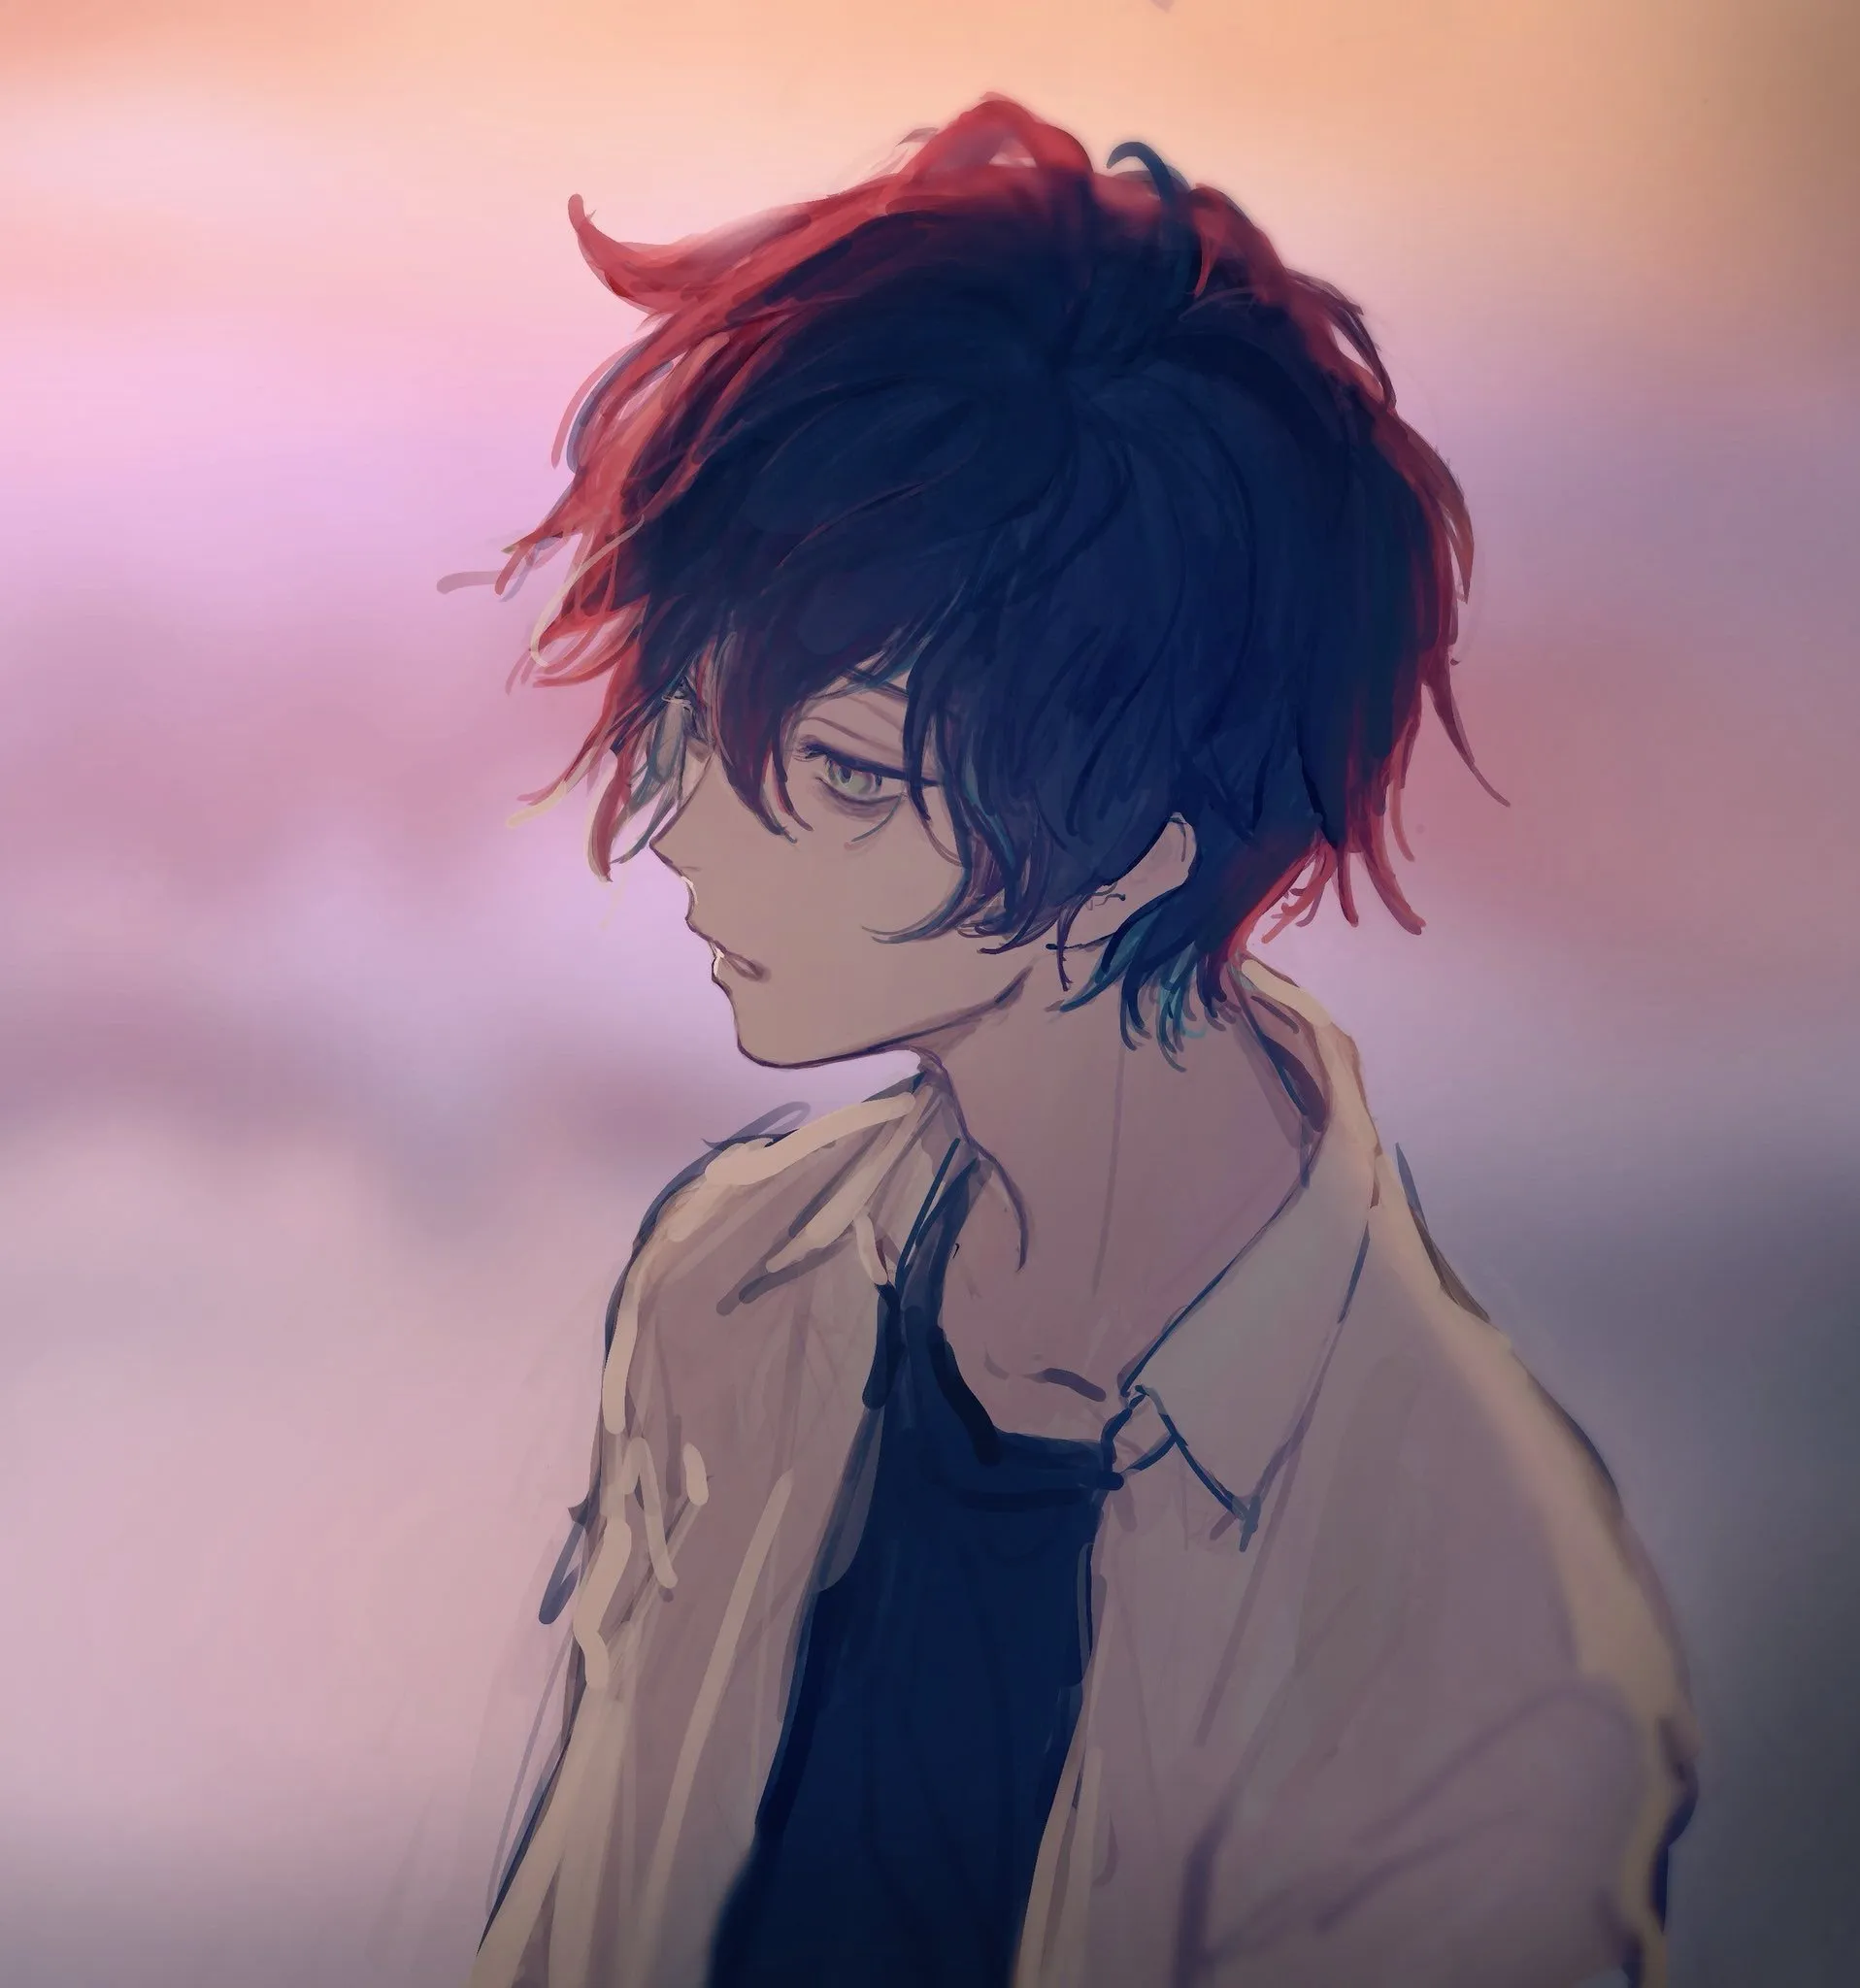 аватарка аниме мальчик грустный (91) фото